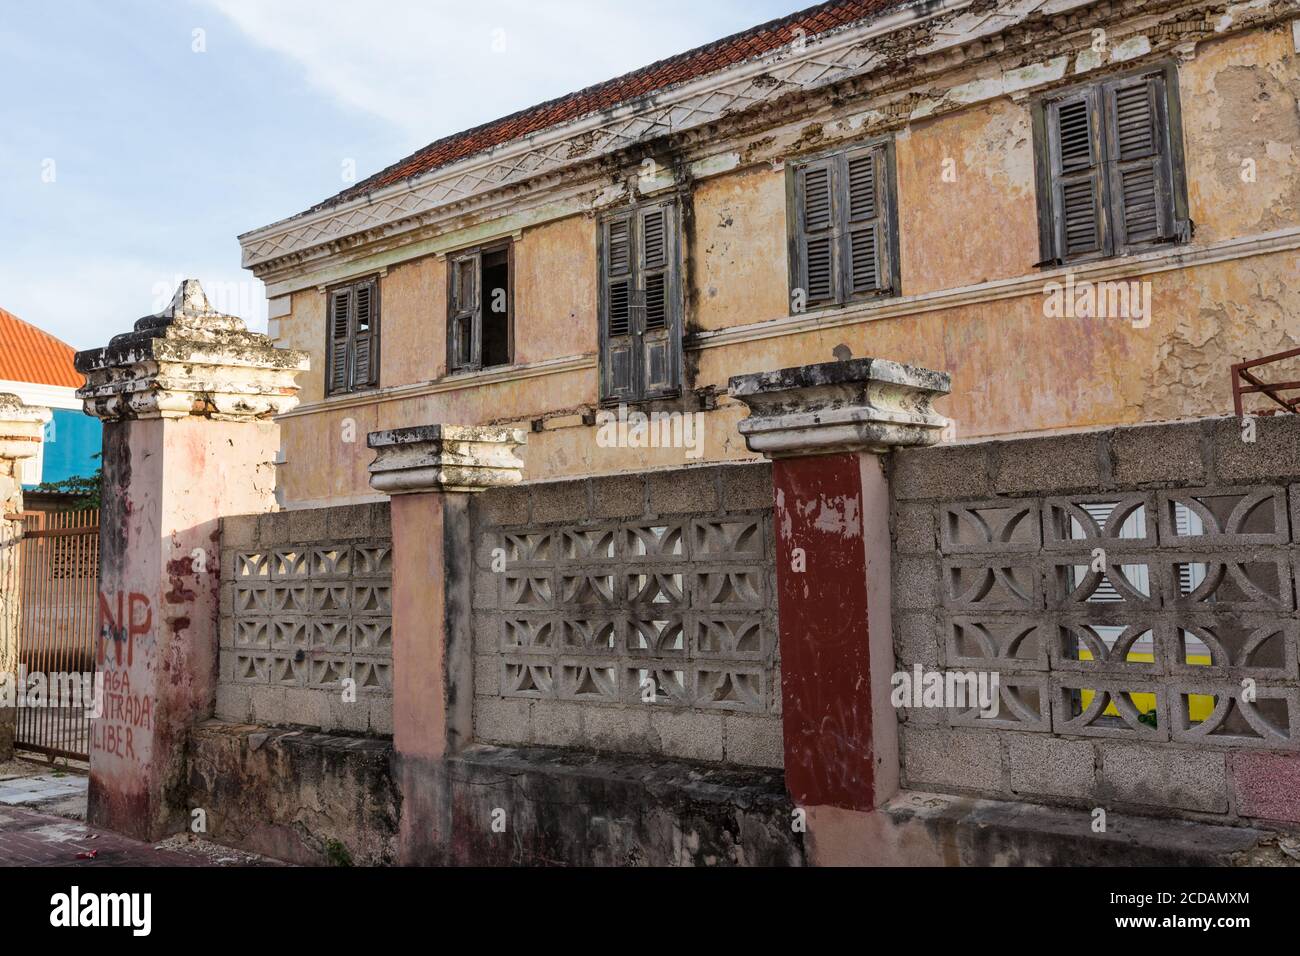 Ein verderbtes historisches Gebäude, das im Stadtteil Scharloo von Willemstad auf die Restaurierung wartet. Alle historischen Gebäude sind gesetzlich geschützt in Curacao. Th Stockfoto